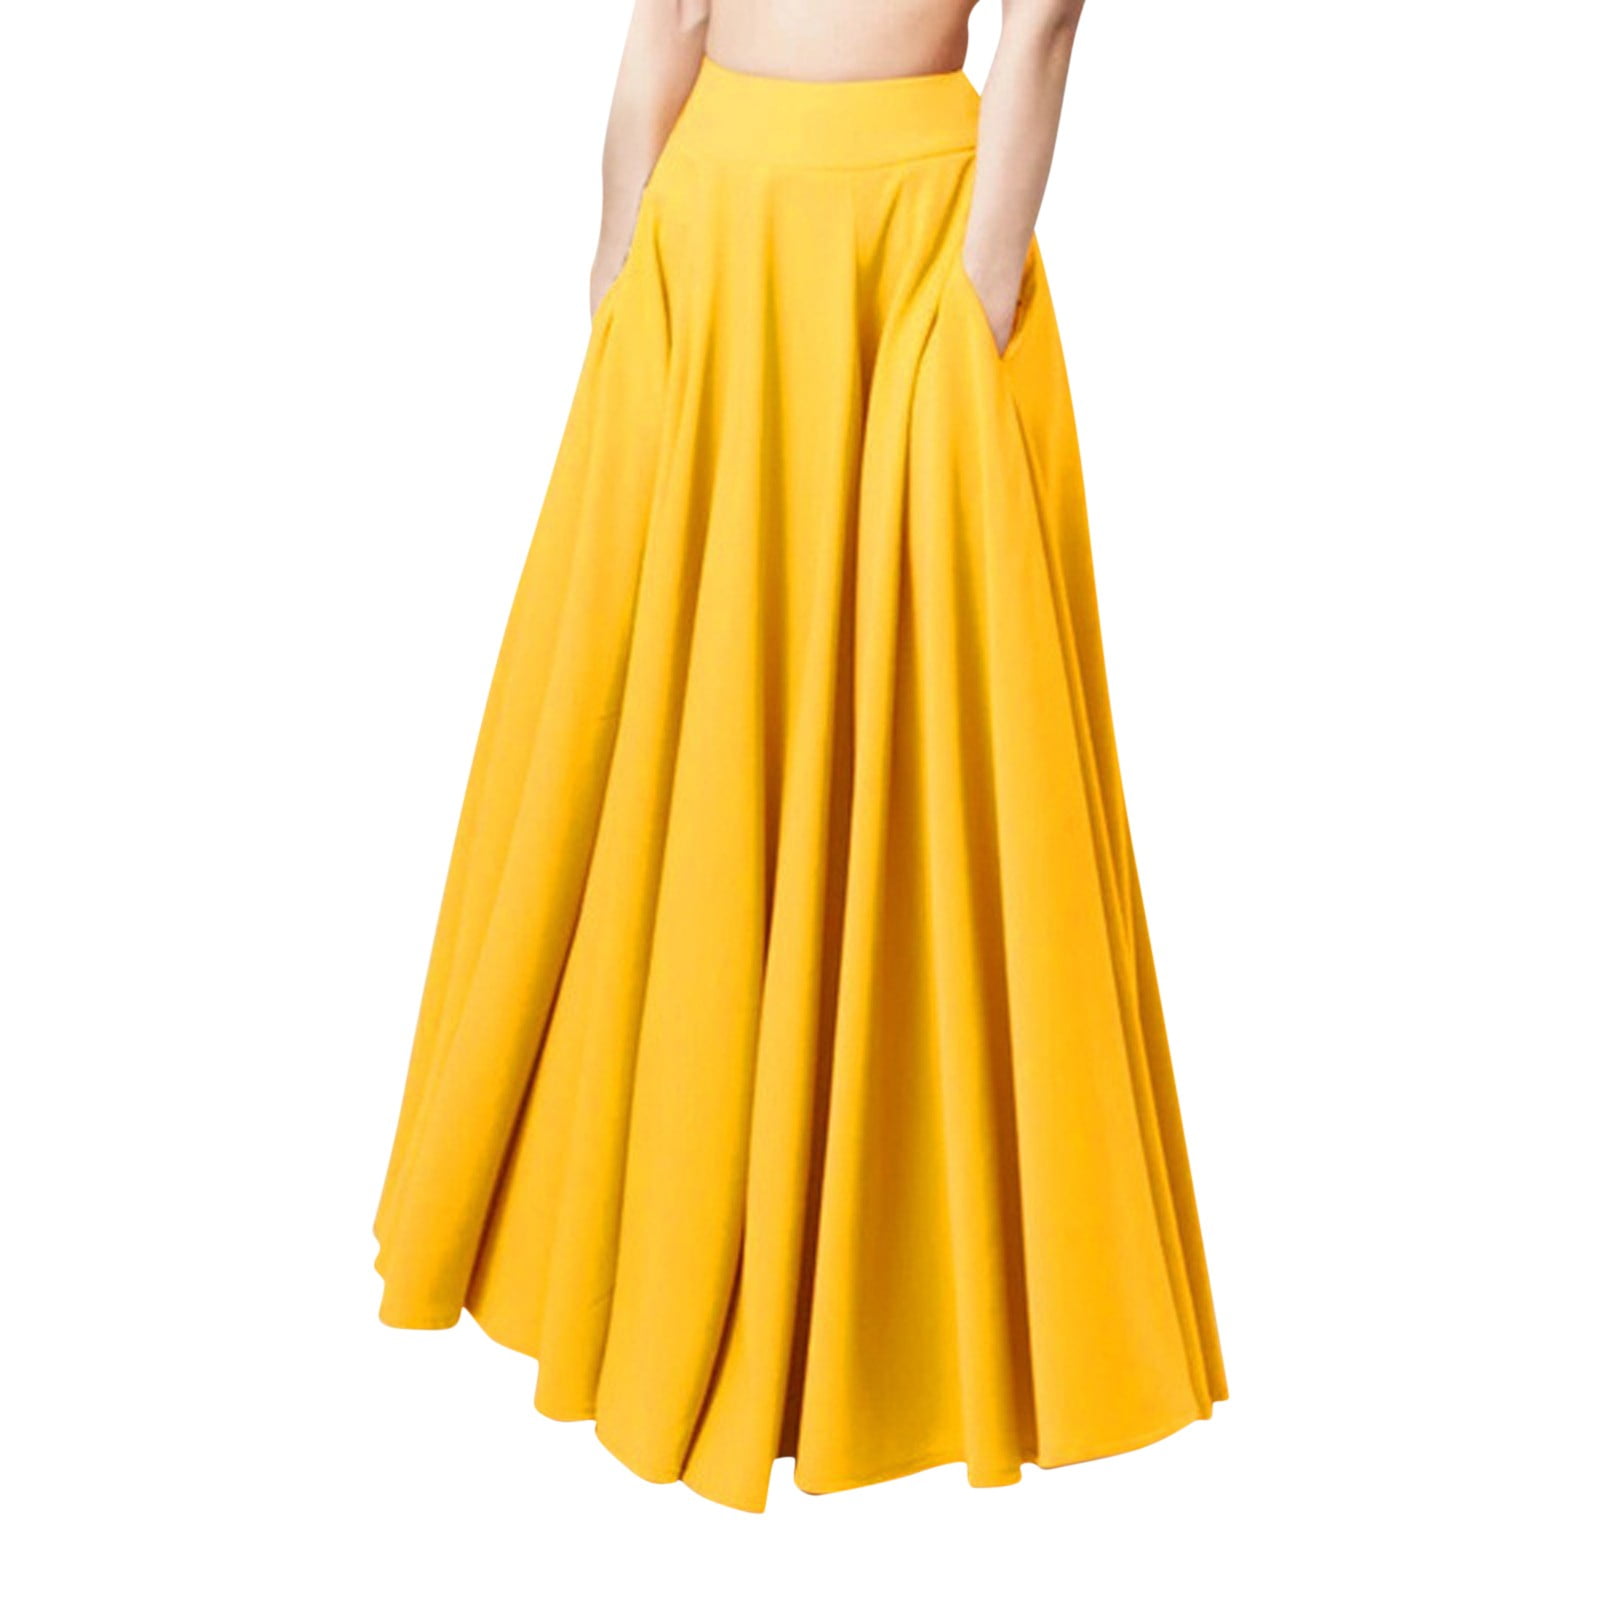 Yellow High Waist Long Skirt  Waist Skirt Maxi High Yellow - Women's Solid  Color - Aliexpress